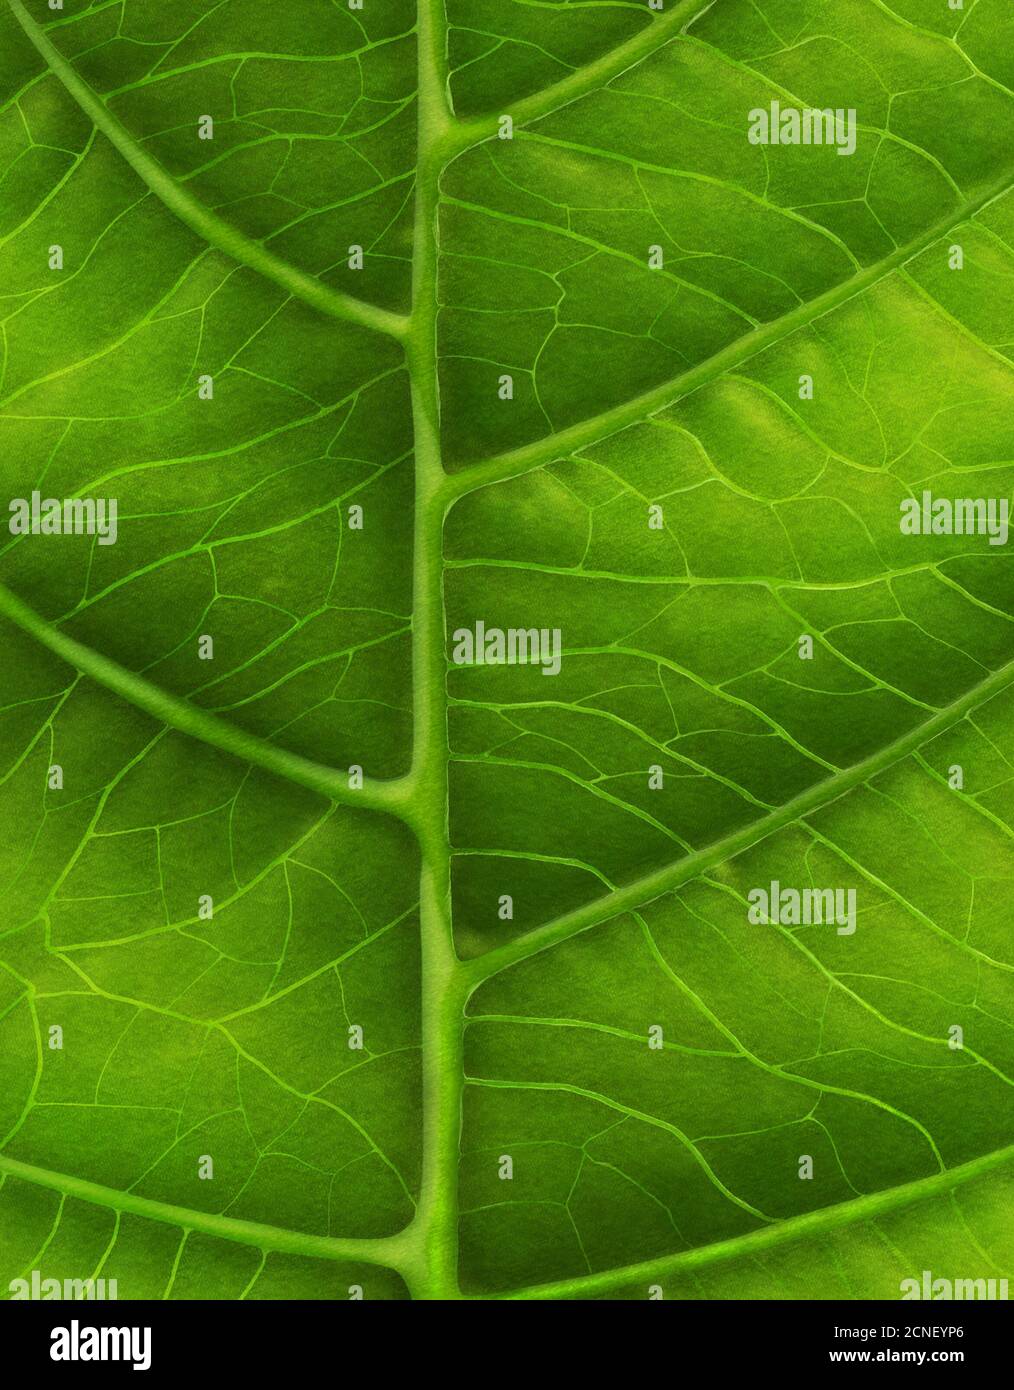 Green leaf close-up Banque D'Images